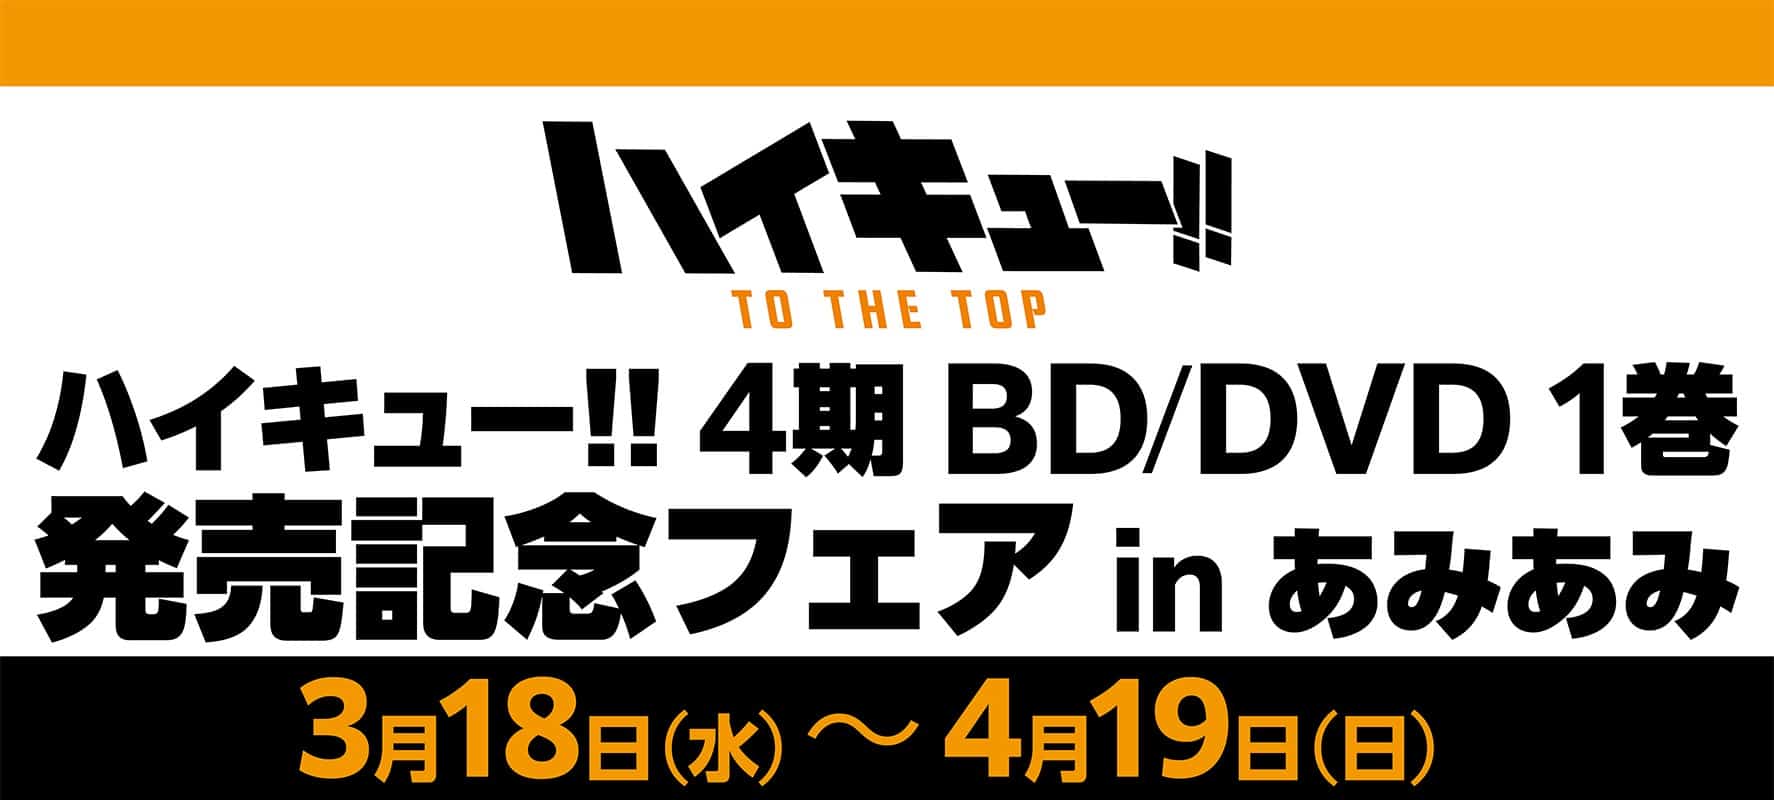 ハイキュー 4期BD/DVD1巻発売記念フェア in あみあみ秋葉原3.18より開催